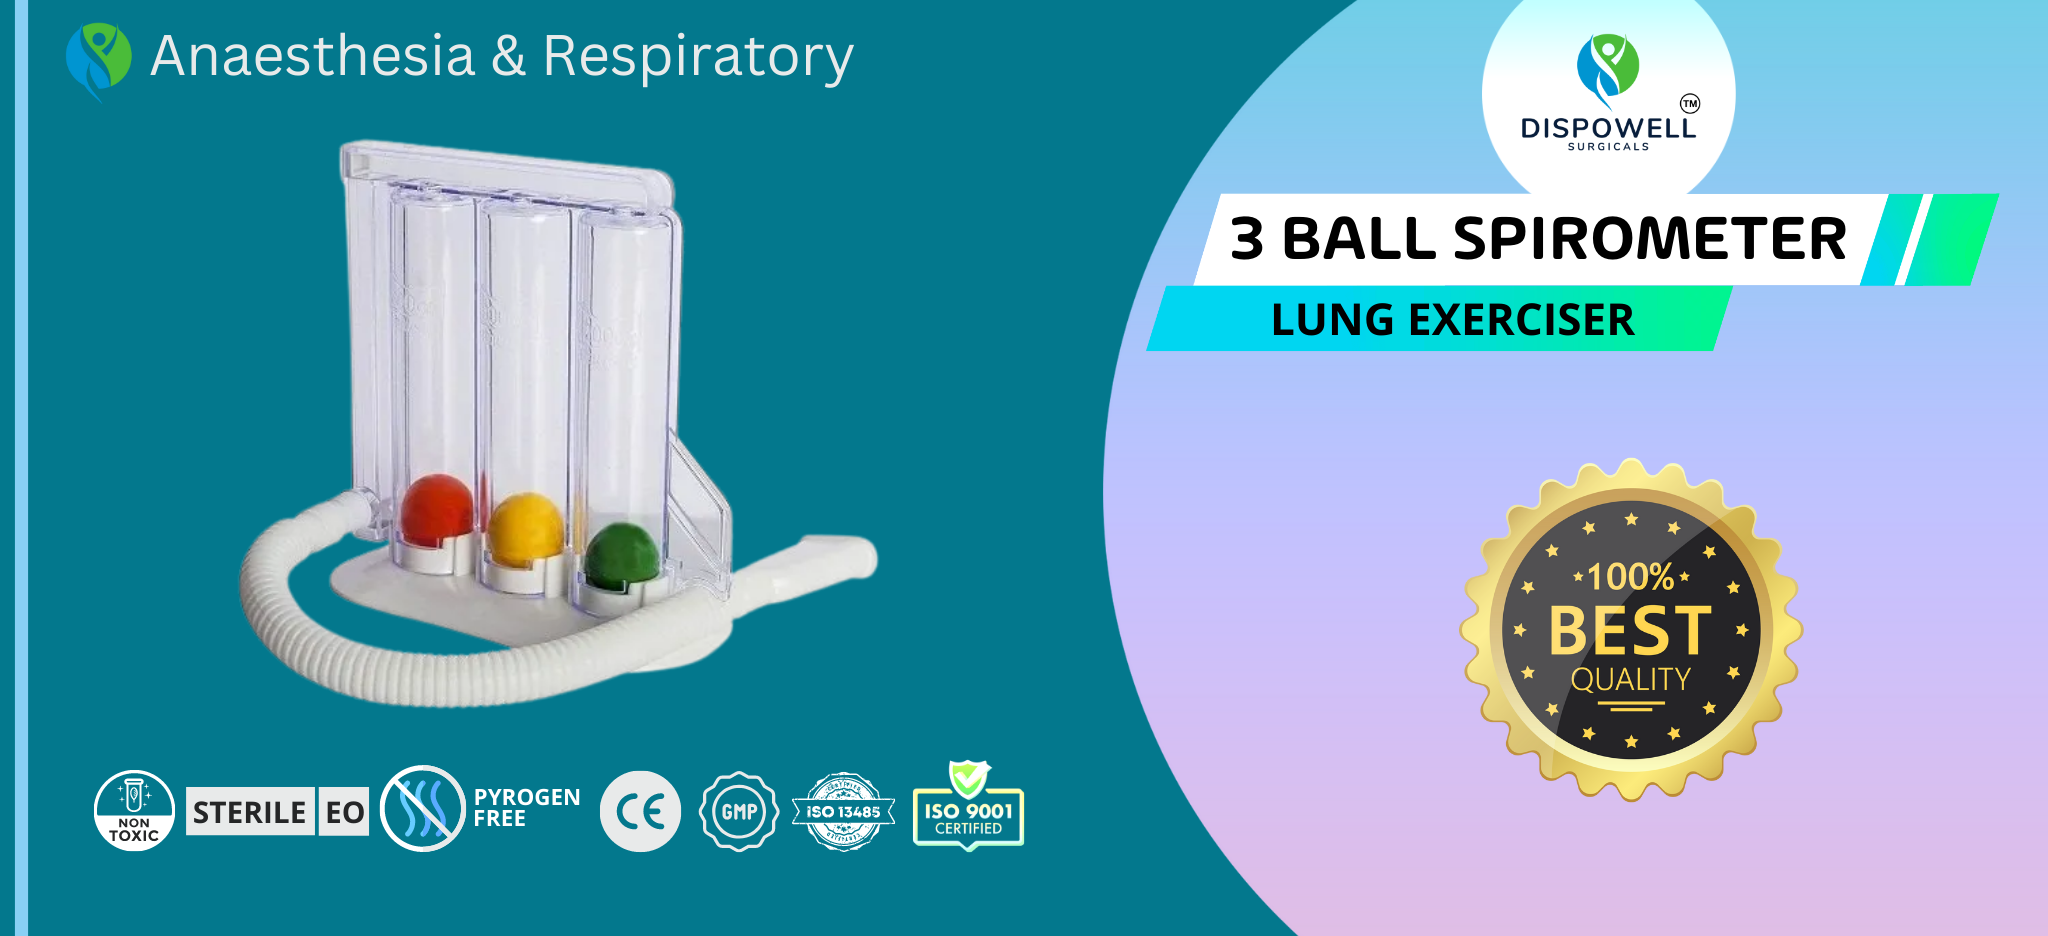 Lung Exerciser – 3 Ball Spirometer 